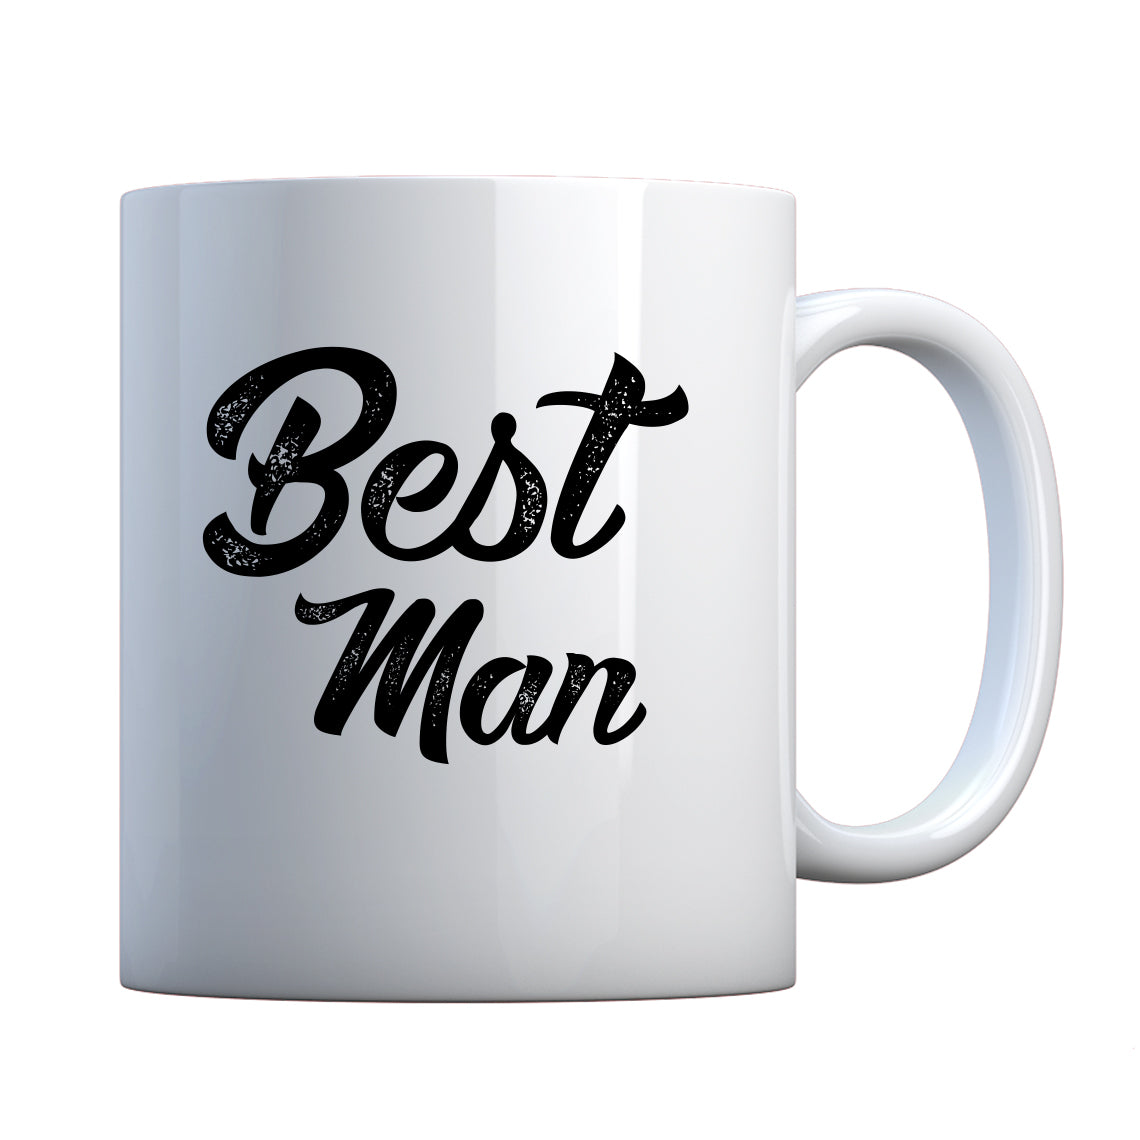 Mug Best Man Ceramic Gift Mug